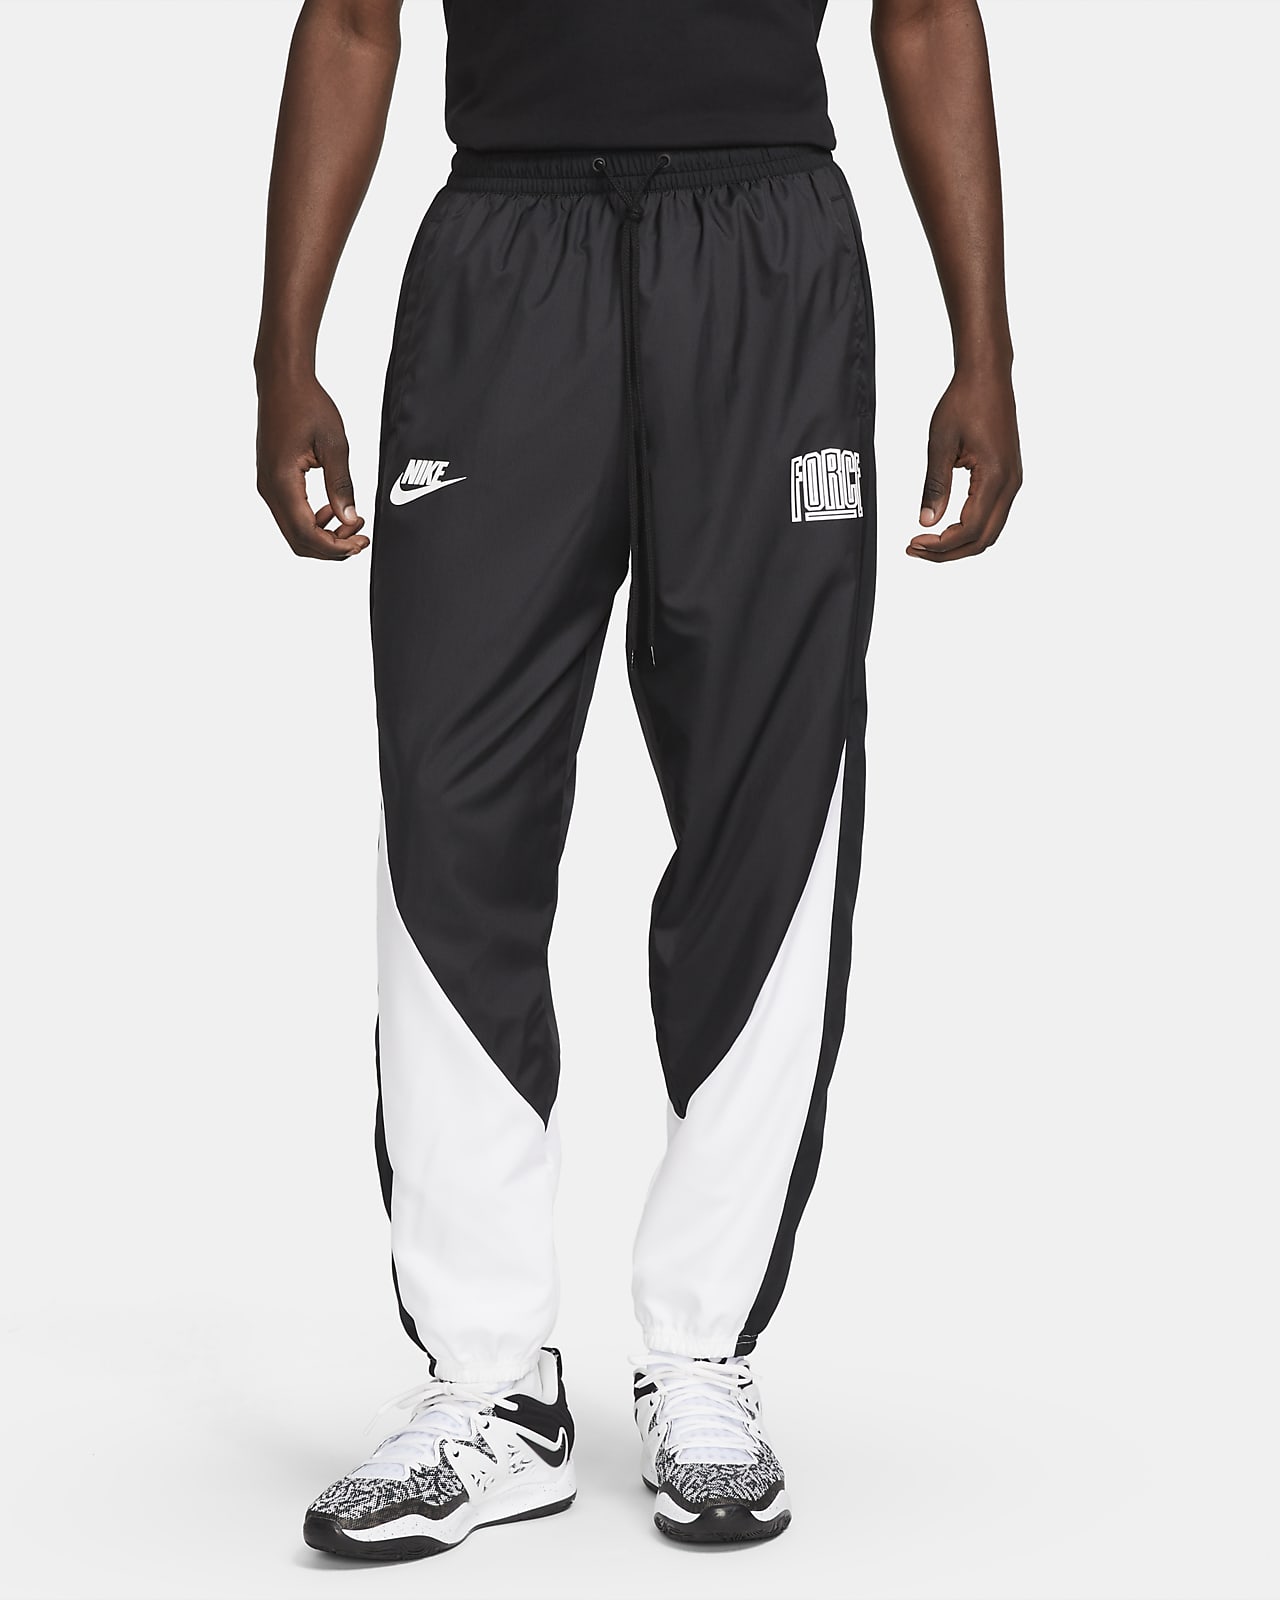 Nike Starting 5 Men's Basketball Pants